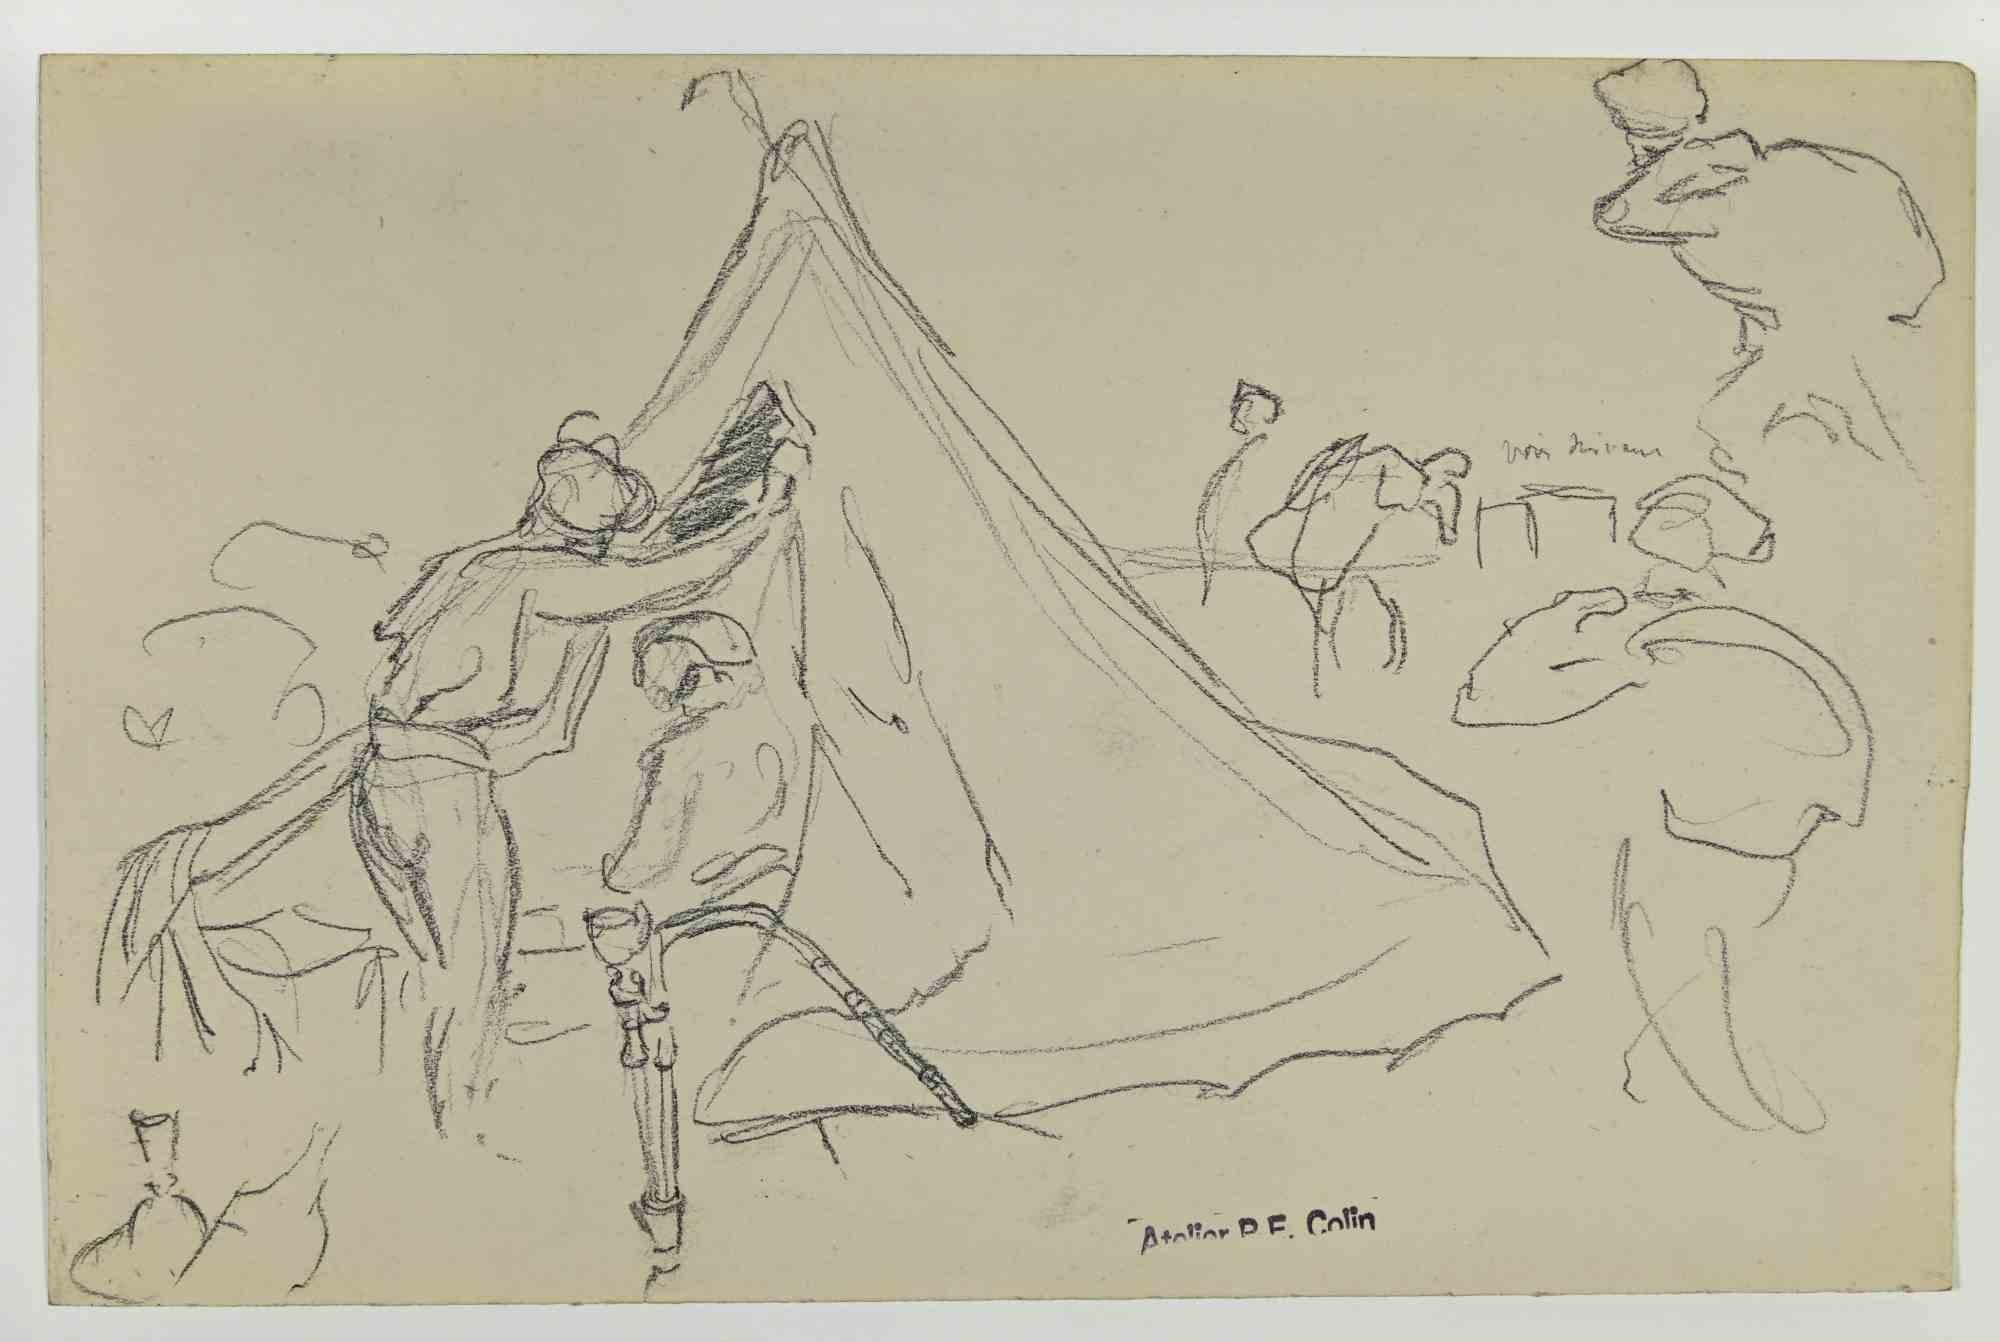 Soldaten im Zelt ist eine Zeichnung von Paul Emile Colin aus dem frühen 20. Jahrhundert.

Kohlestift auf elfenbeinfarbenem Papier

Auf der Unterseite gestempelt.

Guter Zustand mit leichten Stockflecken.

Das Kunstwerk wird durch geschickte